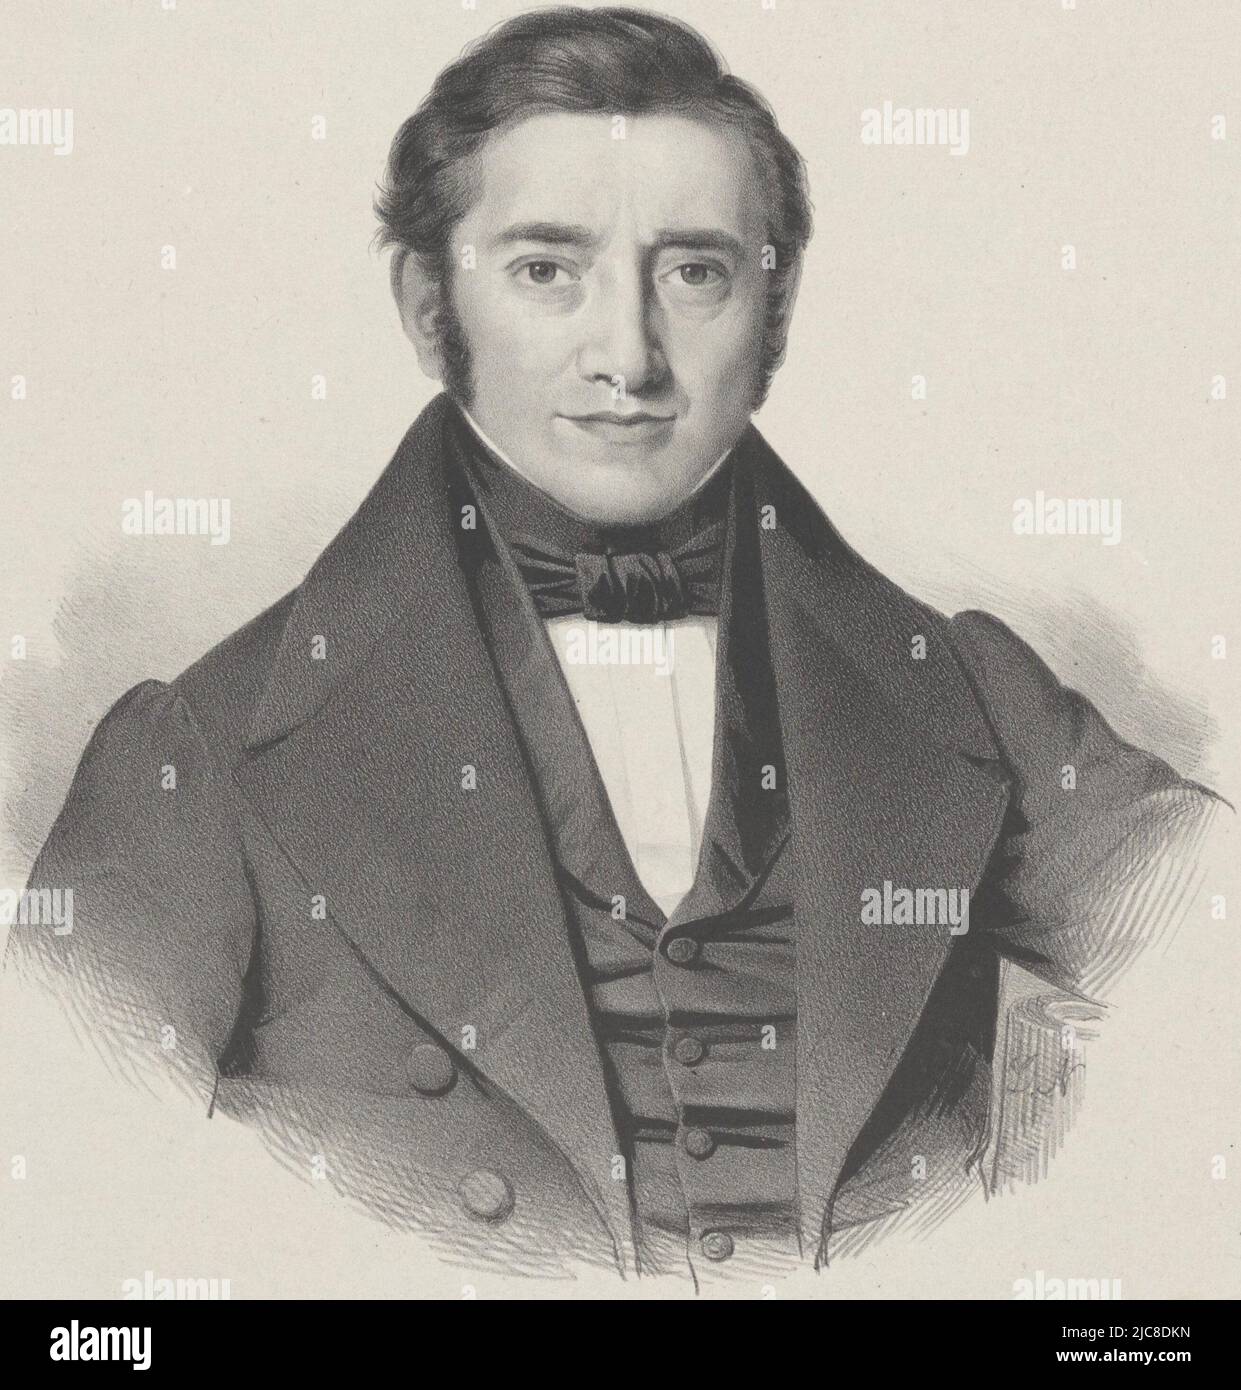 Portrait de l'enseignant Berend Brugsma., imprimeur: Hilmar Johannes Backer, Dordrecht, 1822 - 1845, papier, h 390 mm × l 294 mm Banque D'Images